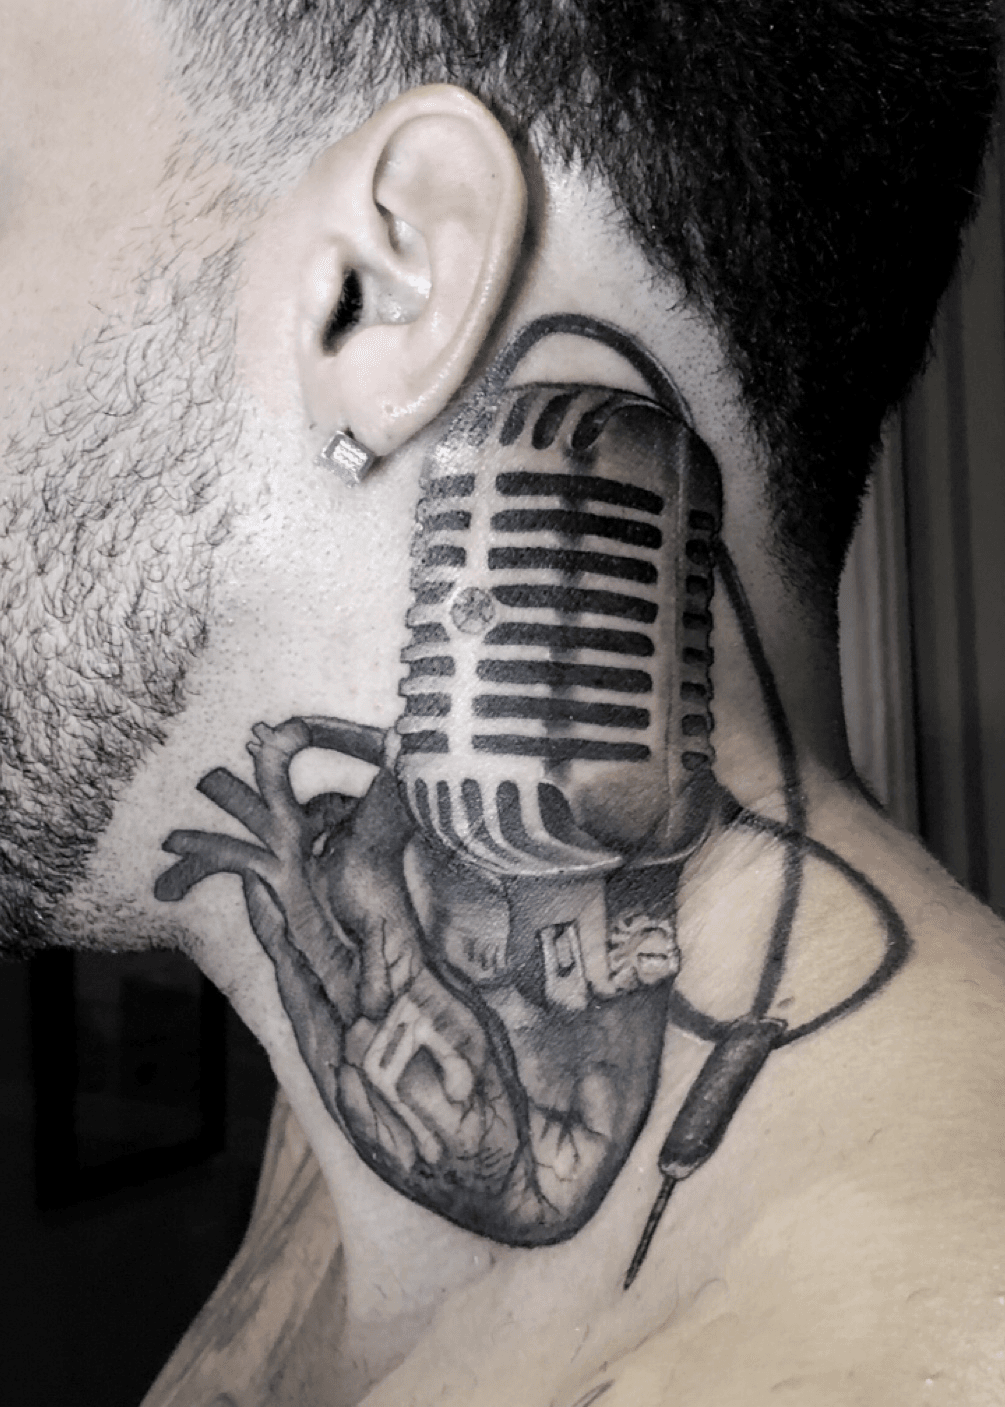 Thank you zaydelm tattoo eartattoo necktattoo tattoos  microphonetattoo tampatattooartist tattooing smallta  Neck tattoo  Small tattoos Microphone tattoo